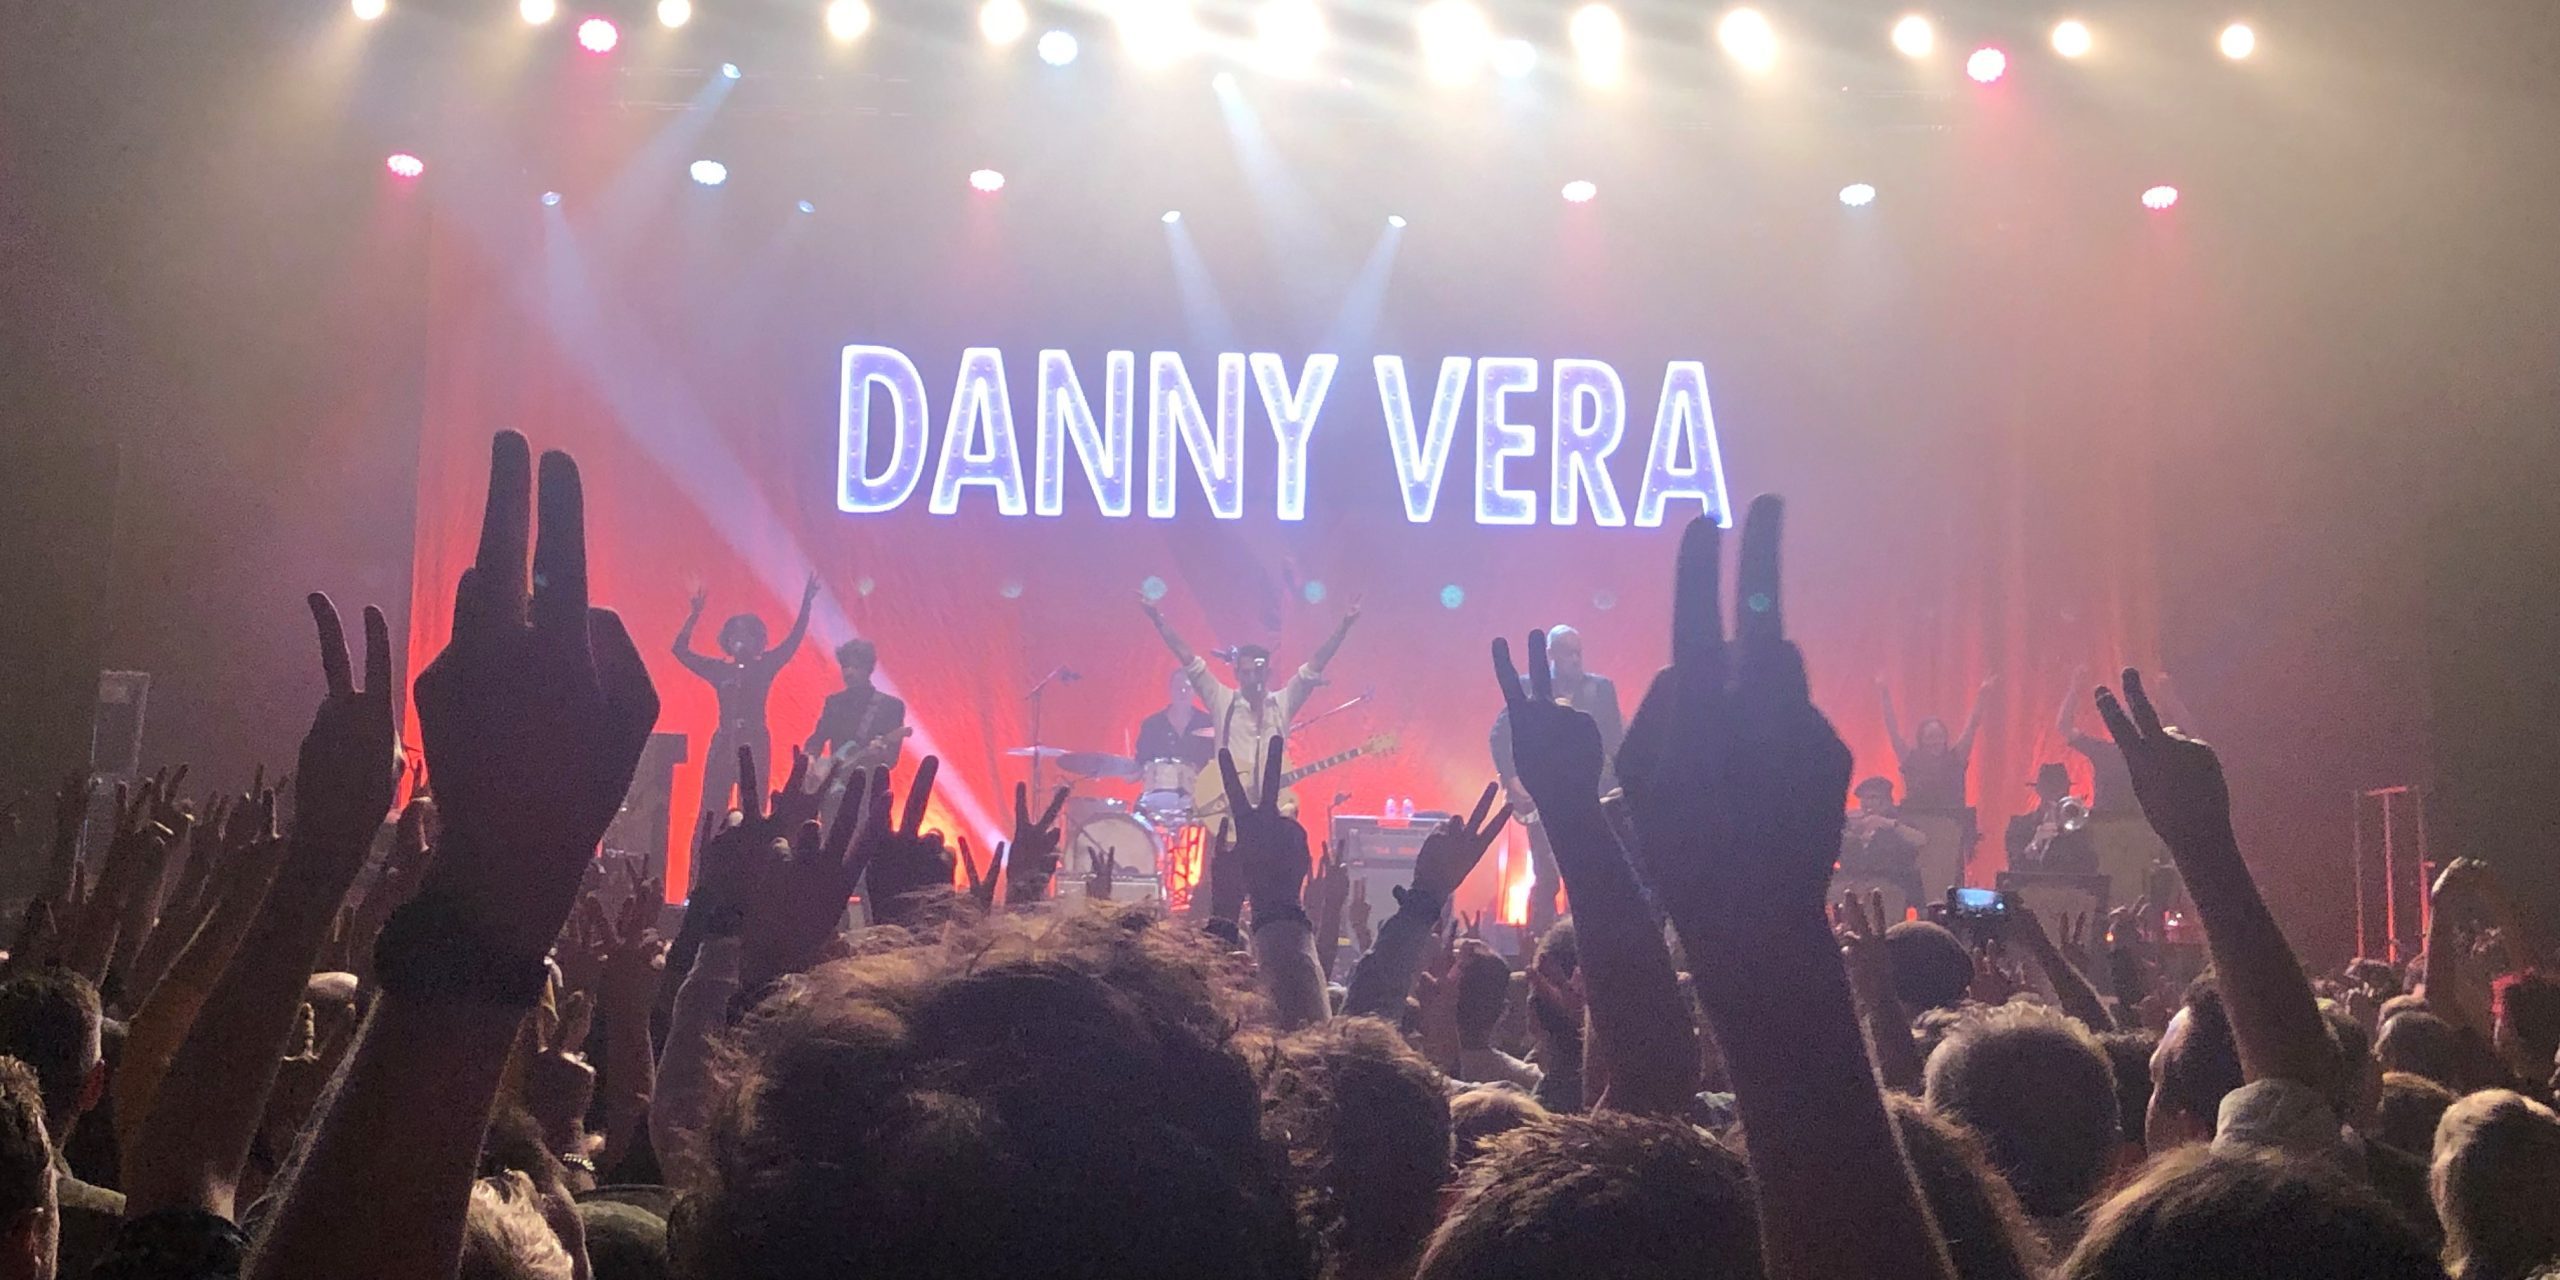 Concert: Danny Vera in Enschede: “Dankjewel pikkies!”